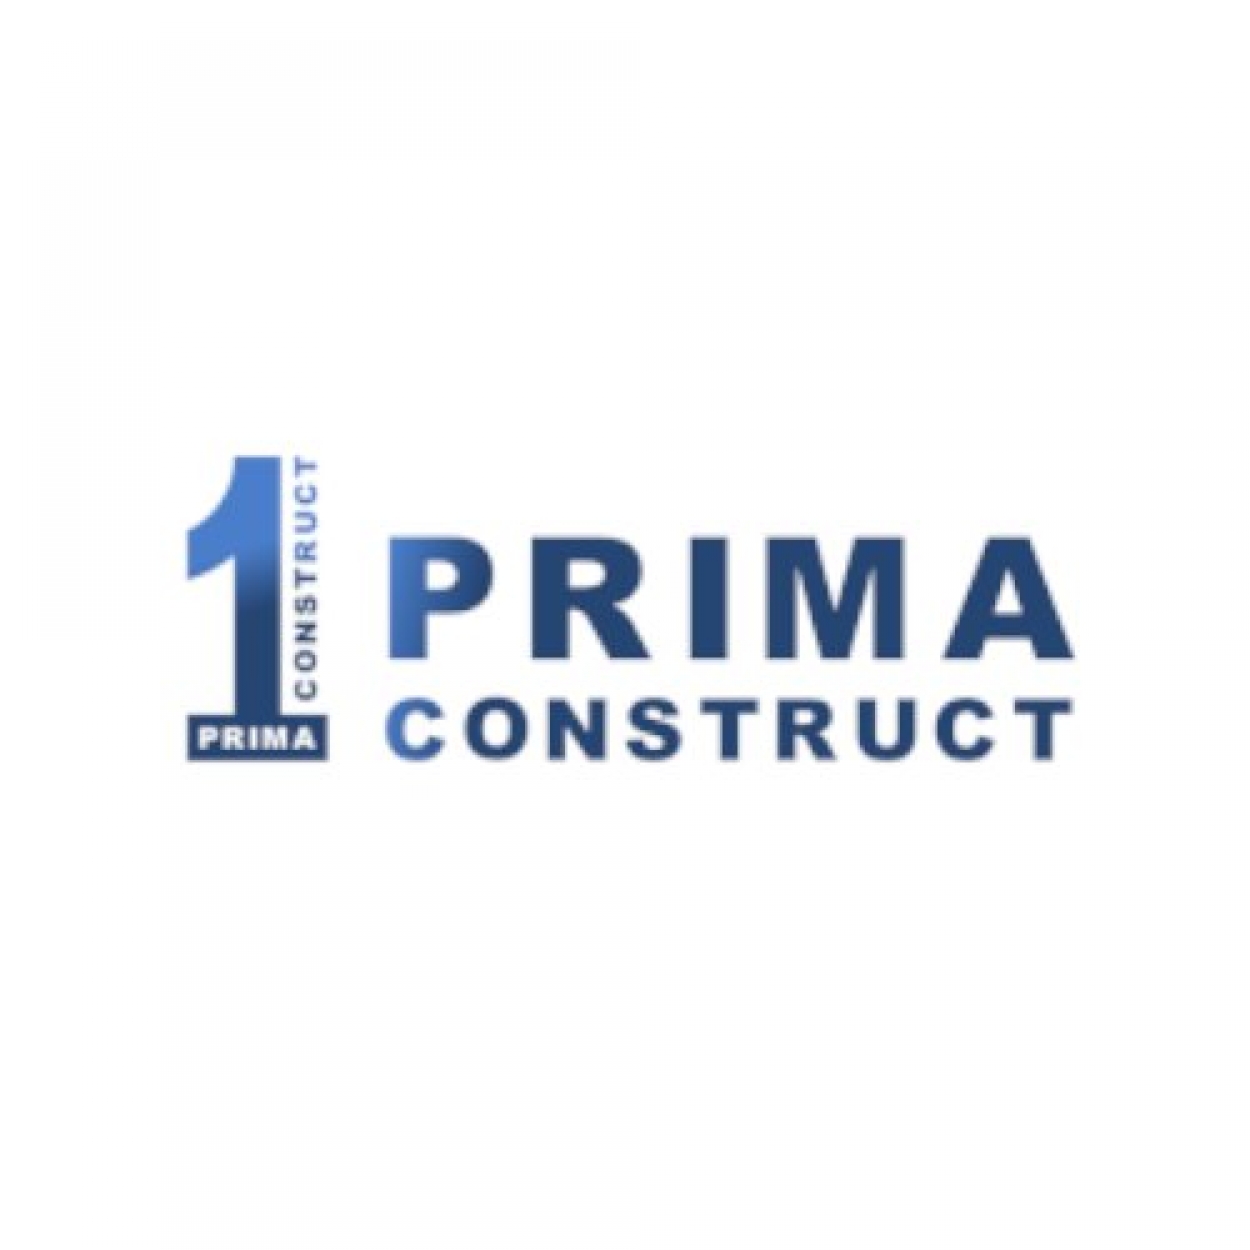 PRIMA CONSTRUCT